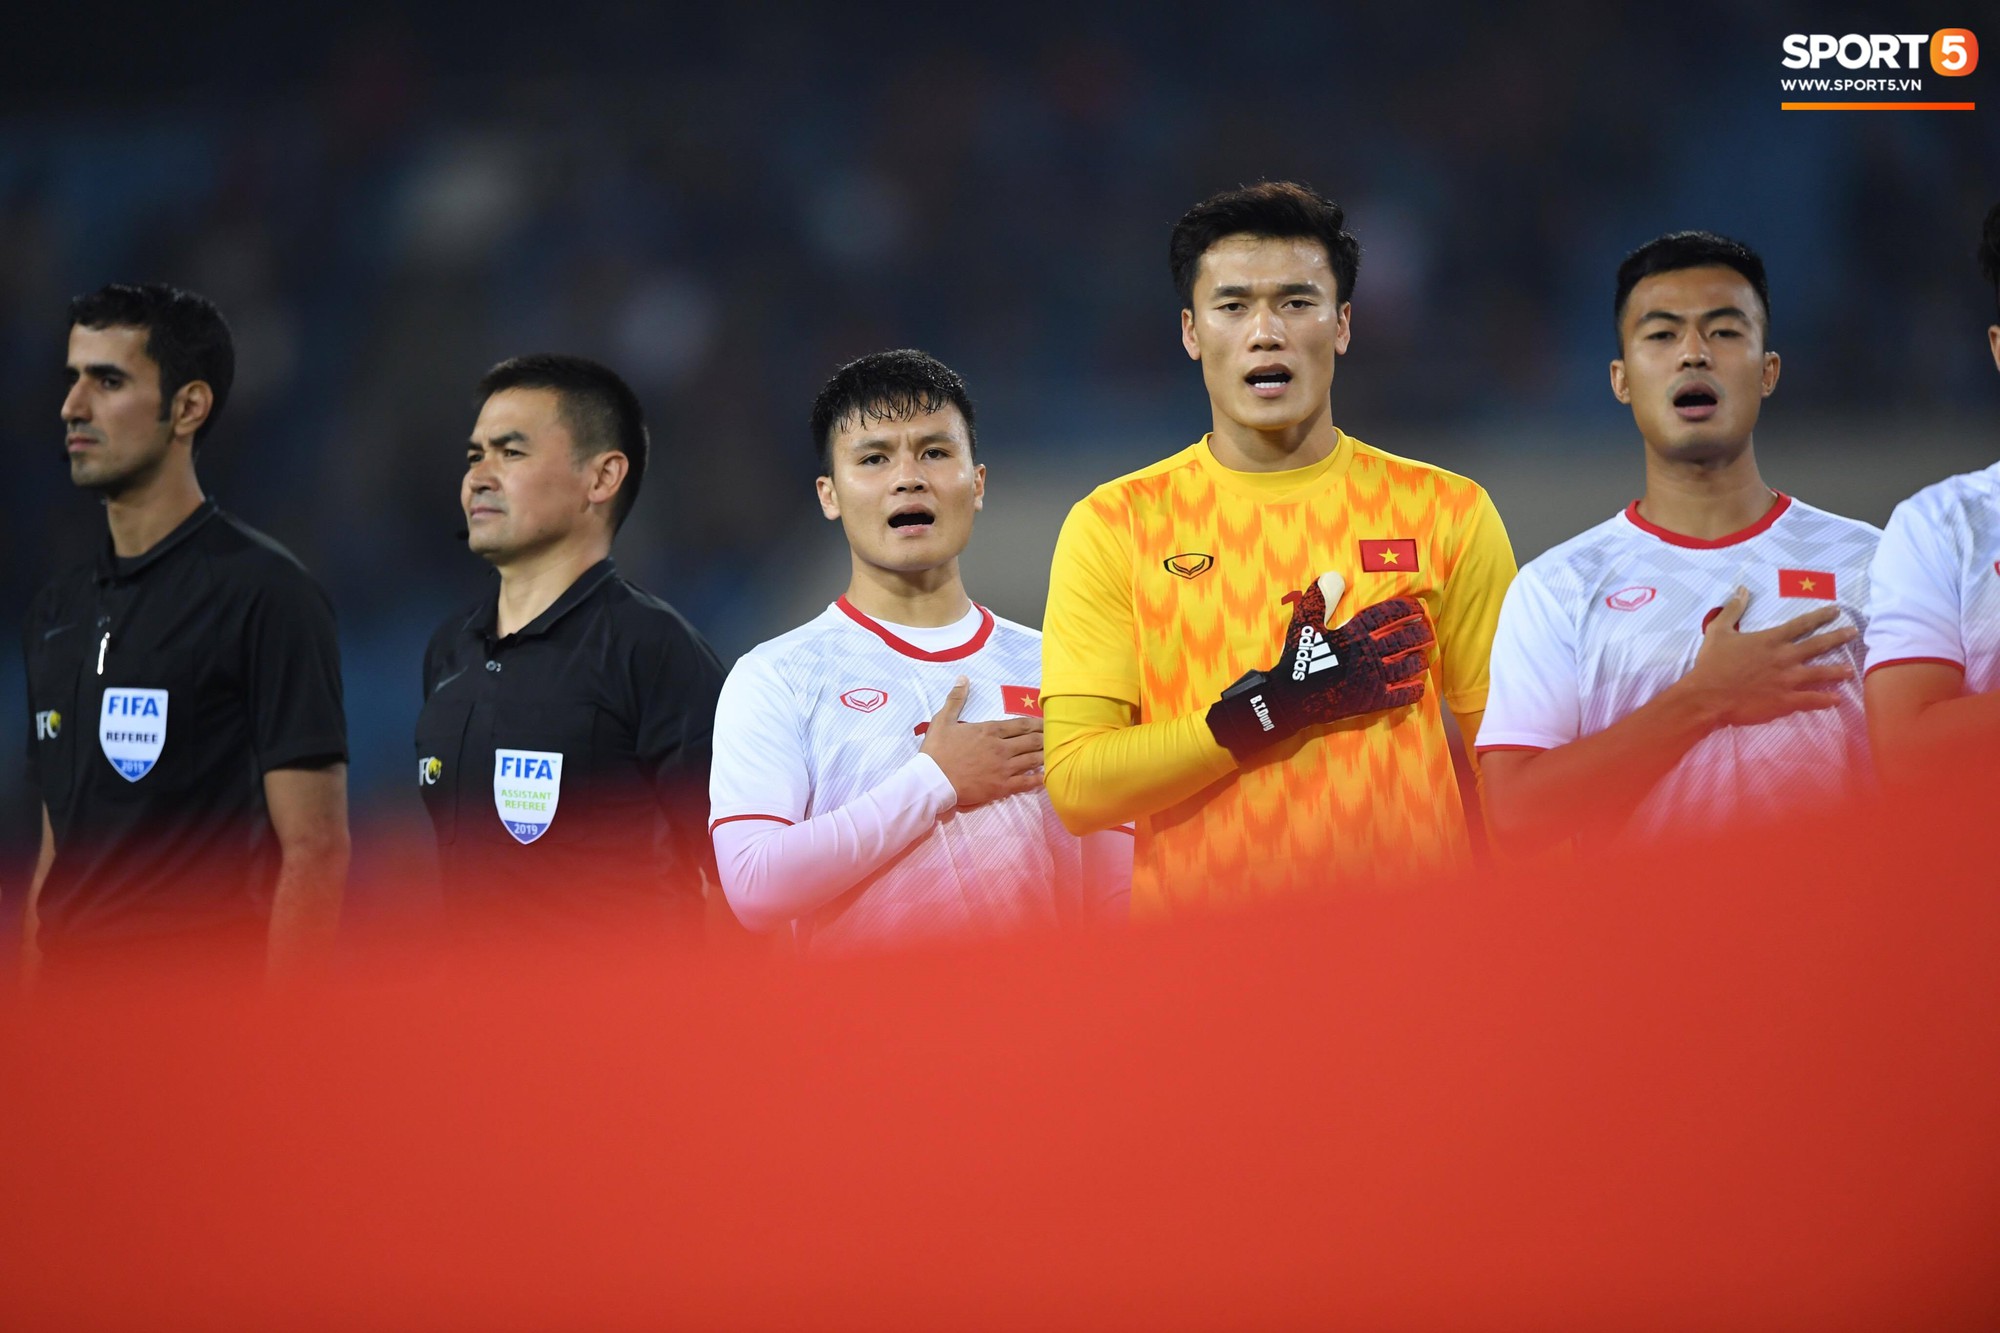 Thủ thành Bùi Tiến Dũng xử lý khó hiểu trong trận đấu với U23 Indonesia - Ảnh 1.